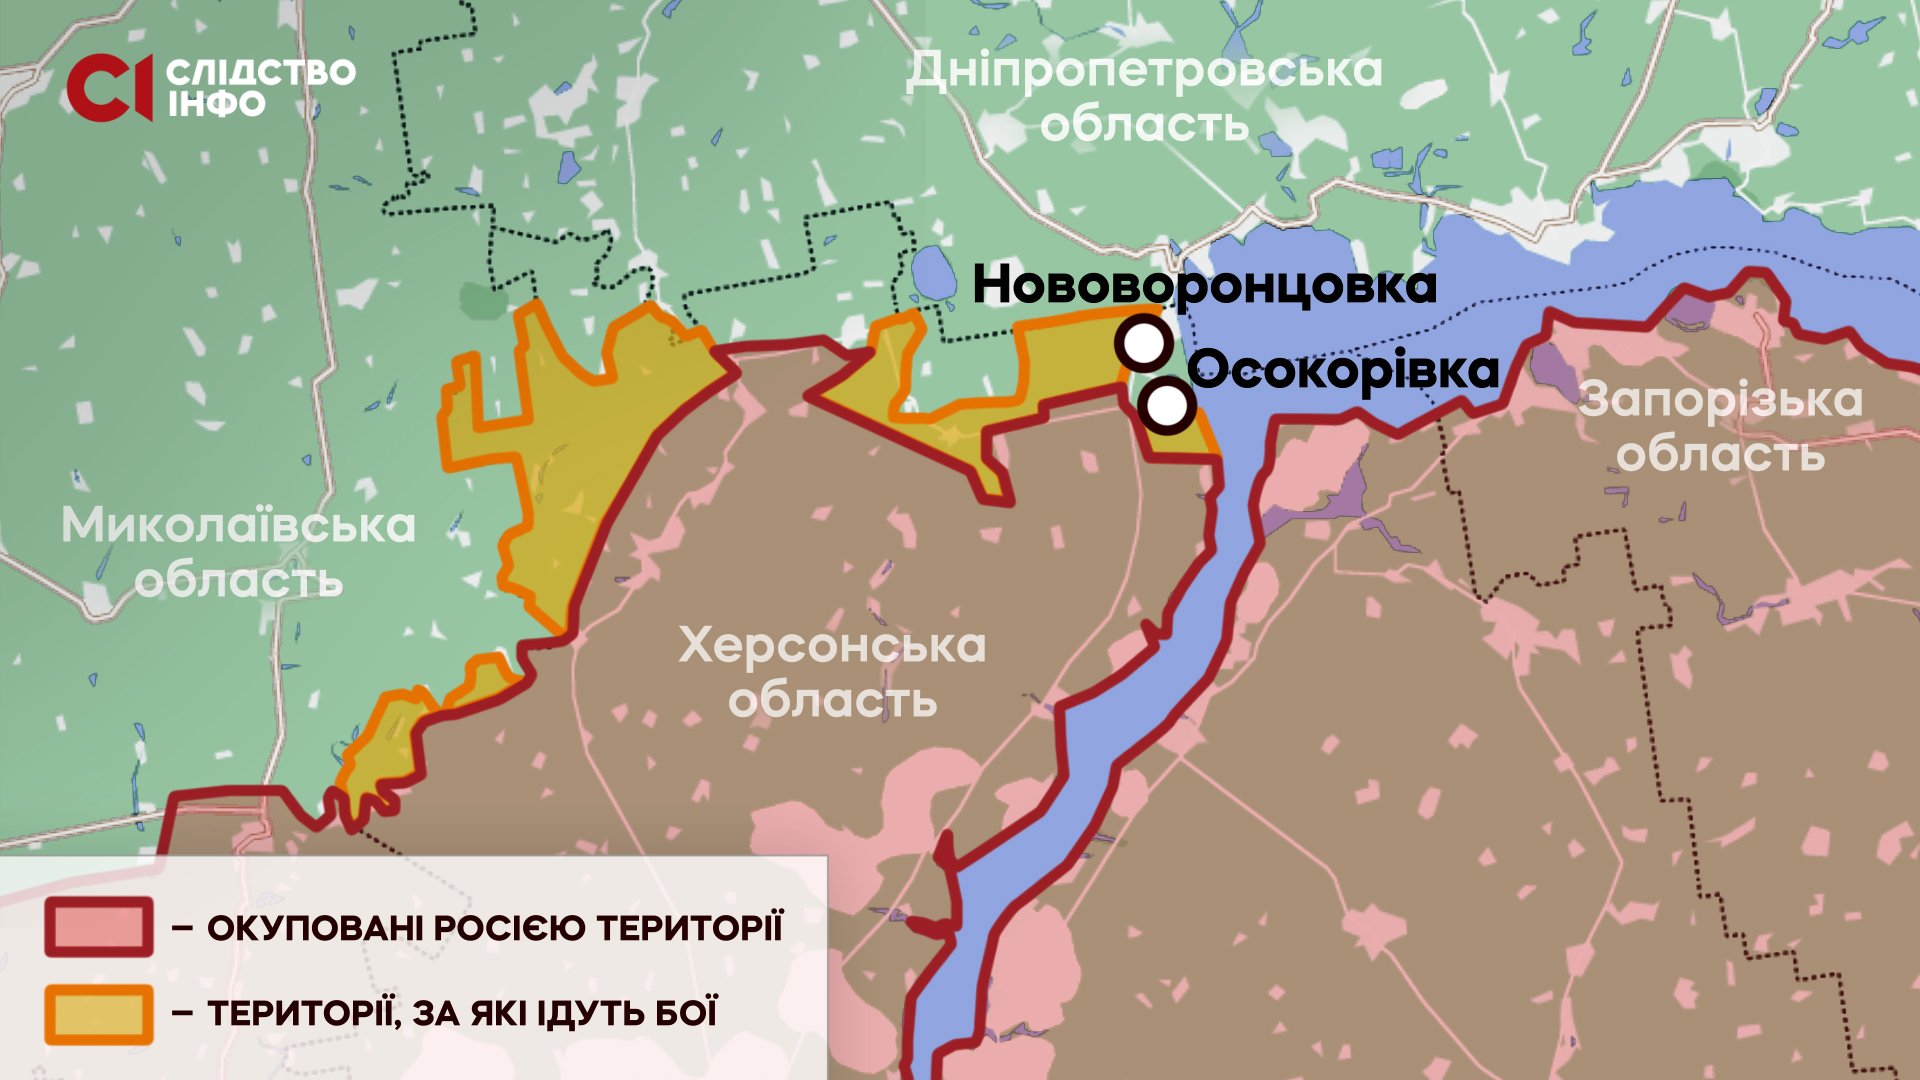 Мапа розташування лінії фронту та вільних сіл Херсонської області станом на 18 травня 2022